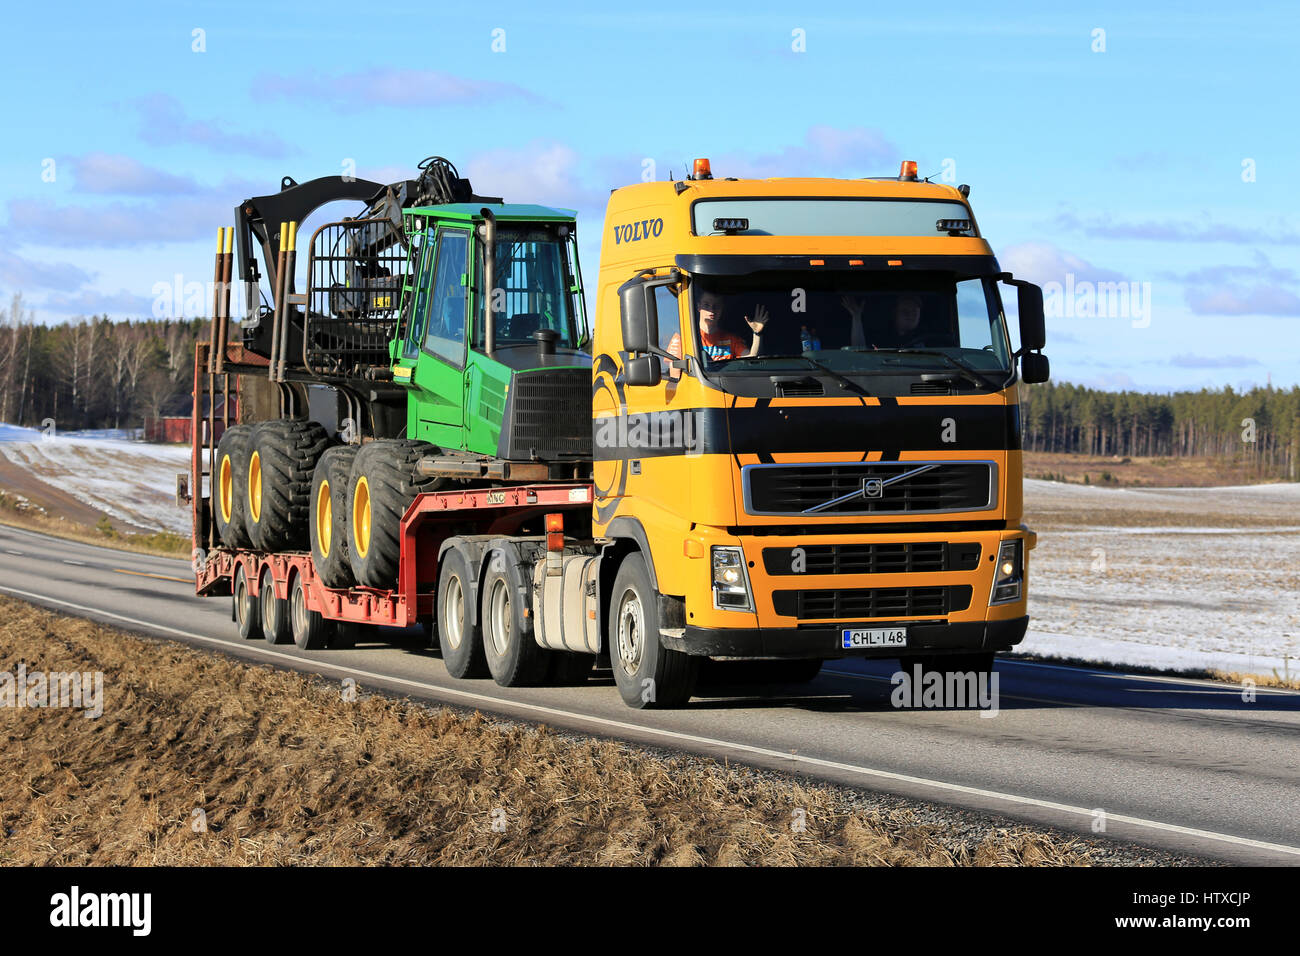 SALO, Finnland - 11. März 2017: Gelb Volvo FH Transporte John Deere 1110 Wald Spediteur auf Schwanenhals Anhänger entlang der Autobahn an einem sonnigen Tag von sprin Stockfoto